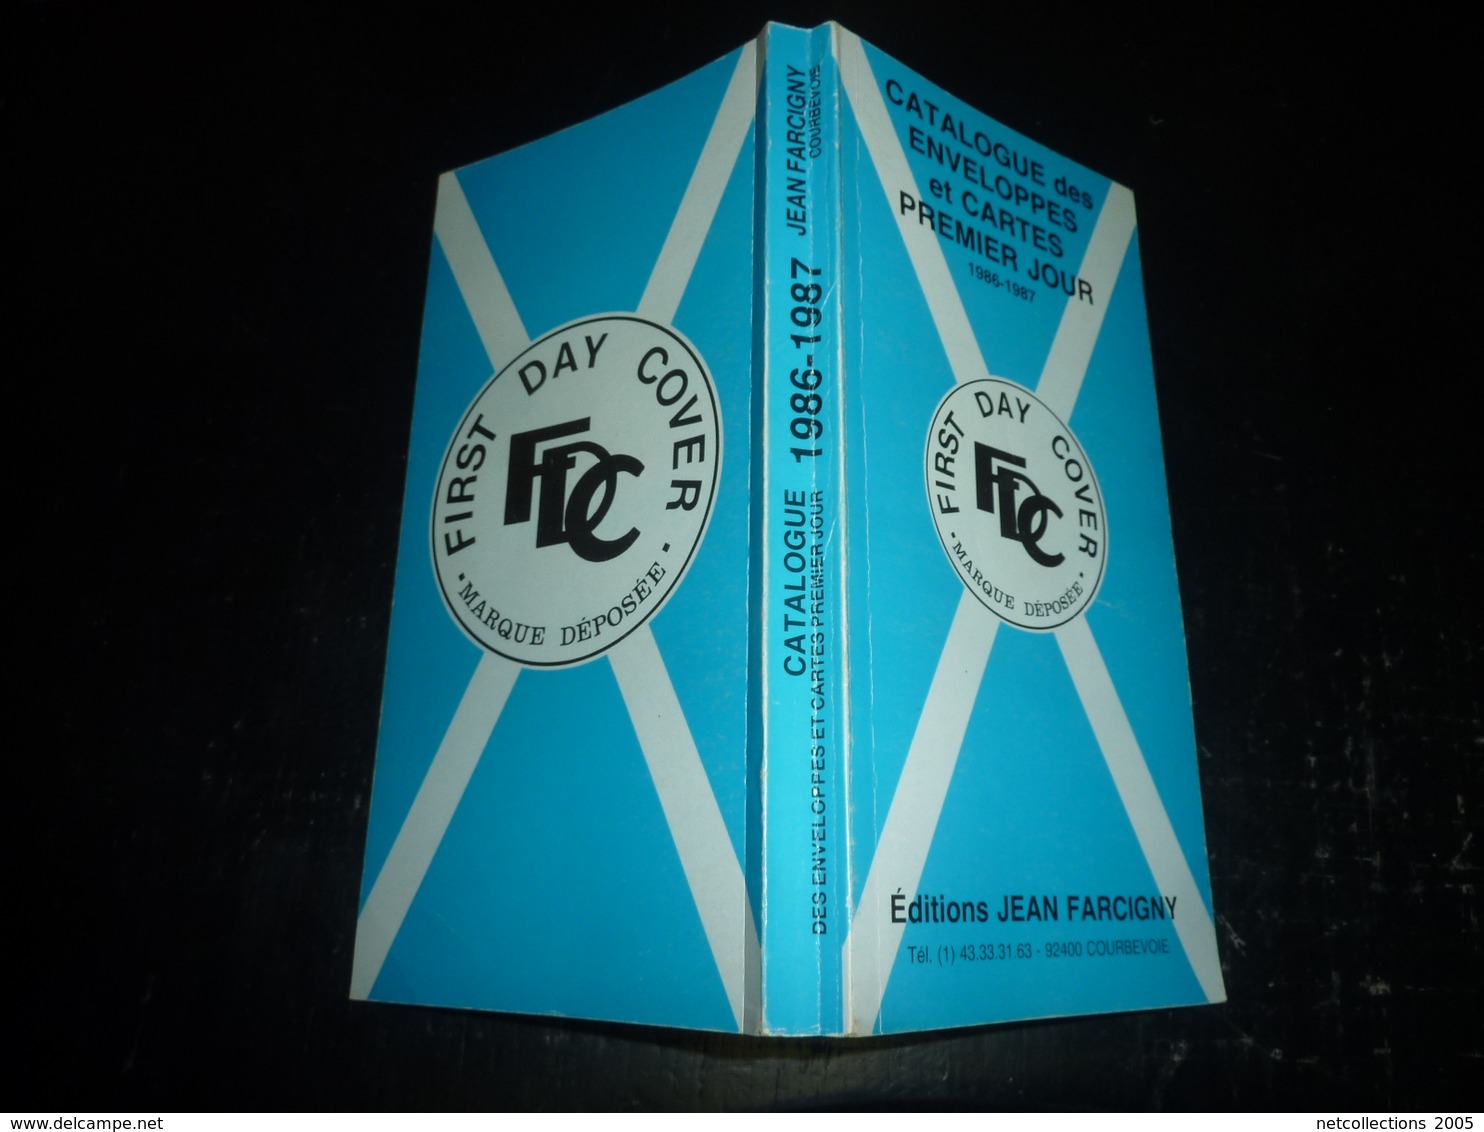 CATALOGUE DES ENVELOPPES ET CARTES PREMIER JOUR 1986-1987 FIRST DAY COVER EDITIONS JEAN FARCIGNY - Motivkataloge